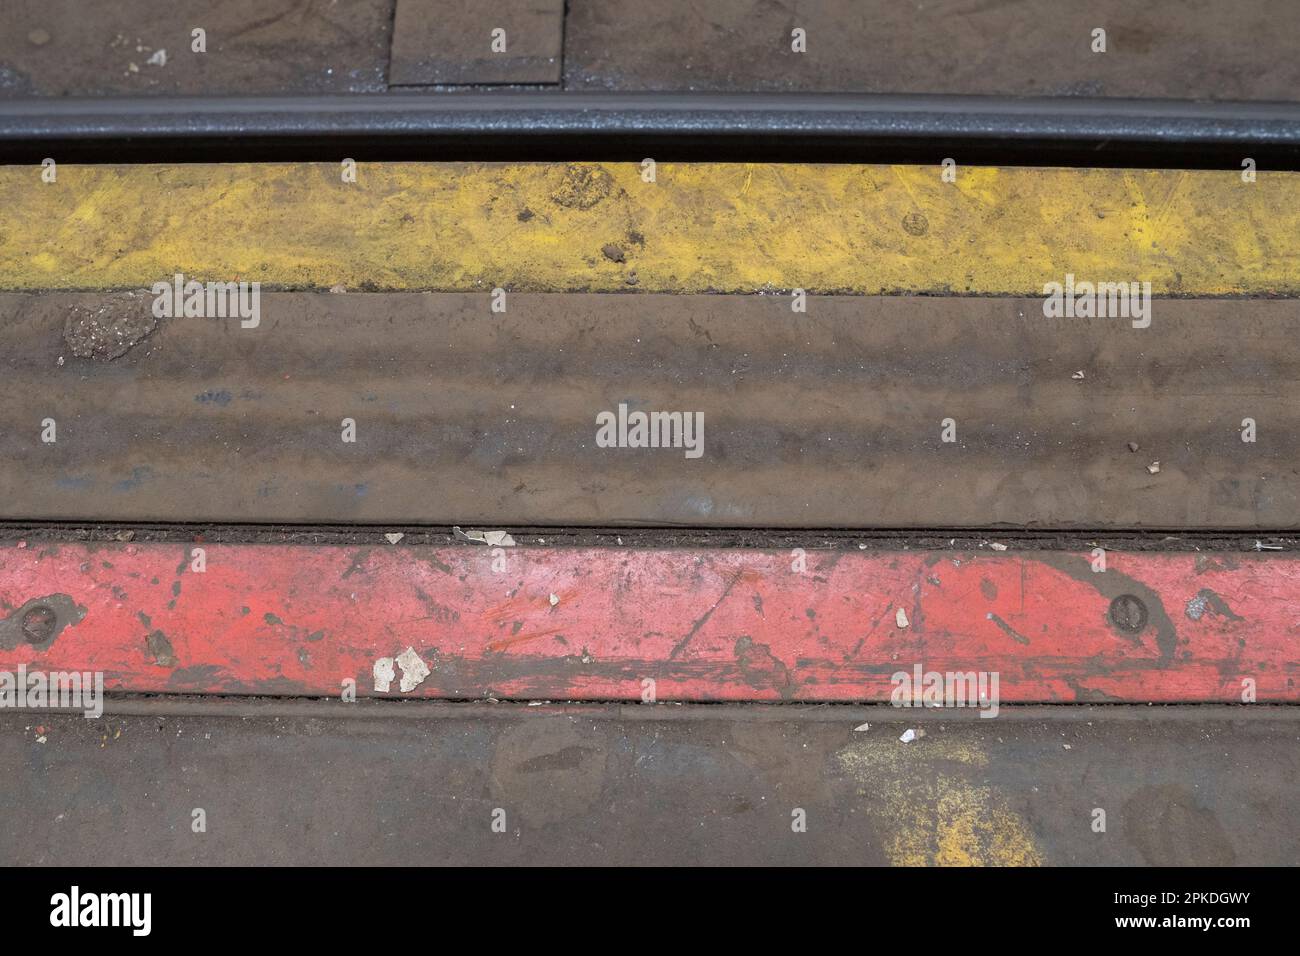 Détail du bord de la plate-forme montrant du matériau de mousse souple*, Mail Rail, l'ancien système de chemin de fer de poste sous les rues du centre de Londres, Royaume-Uni. Banque D'Images